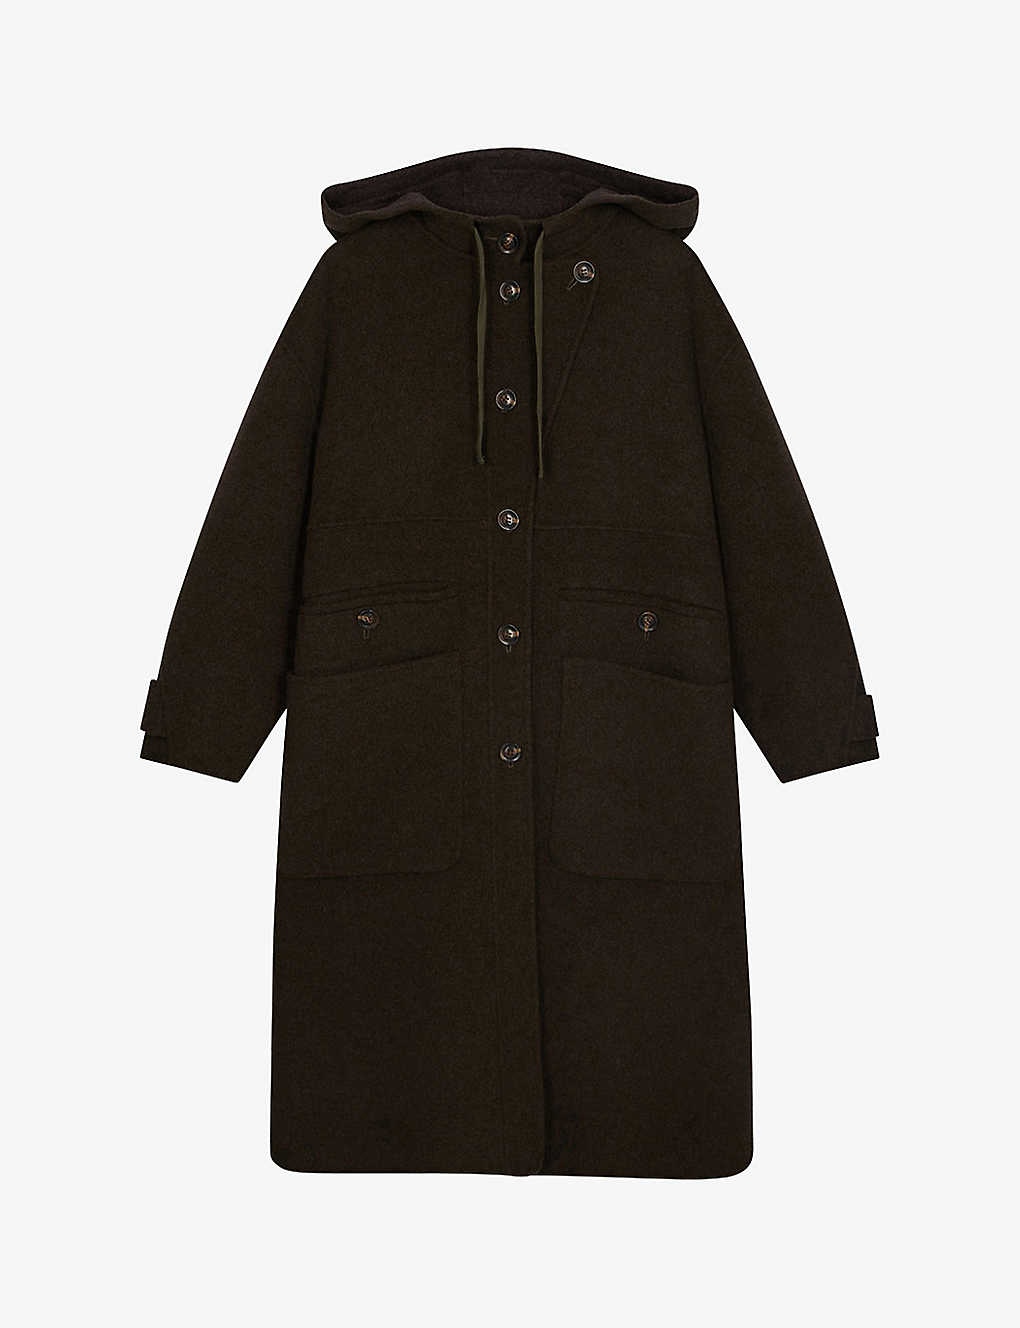 Soeur Raoul Hooded Wool-blend Coat In Khaki/brown